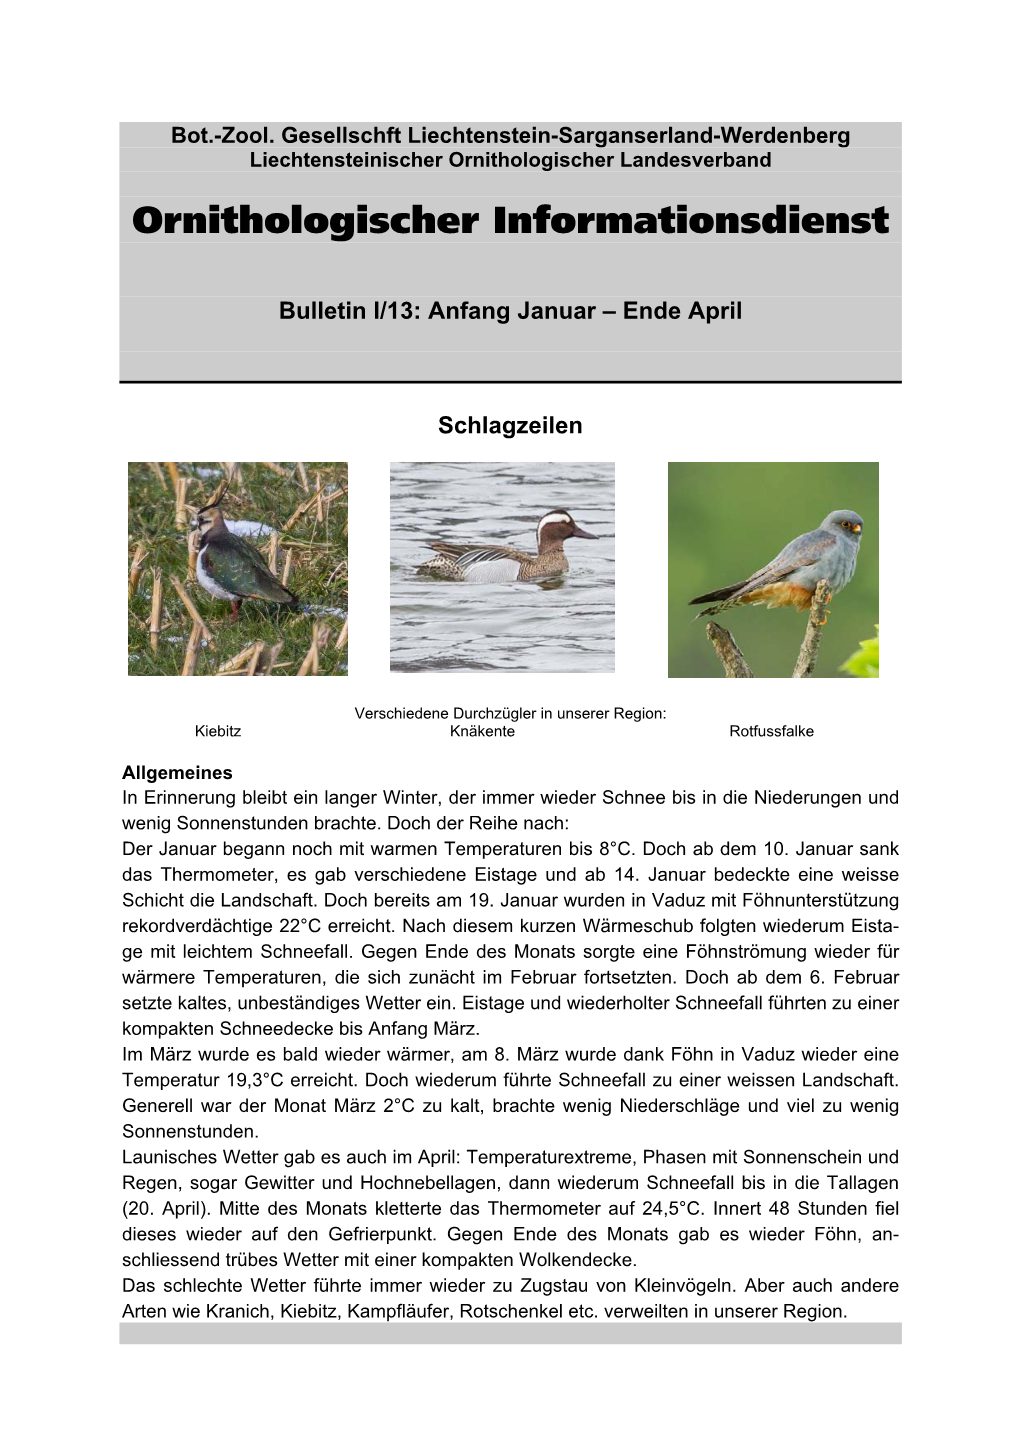 Ornithologischer Informationsdienst